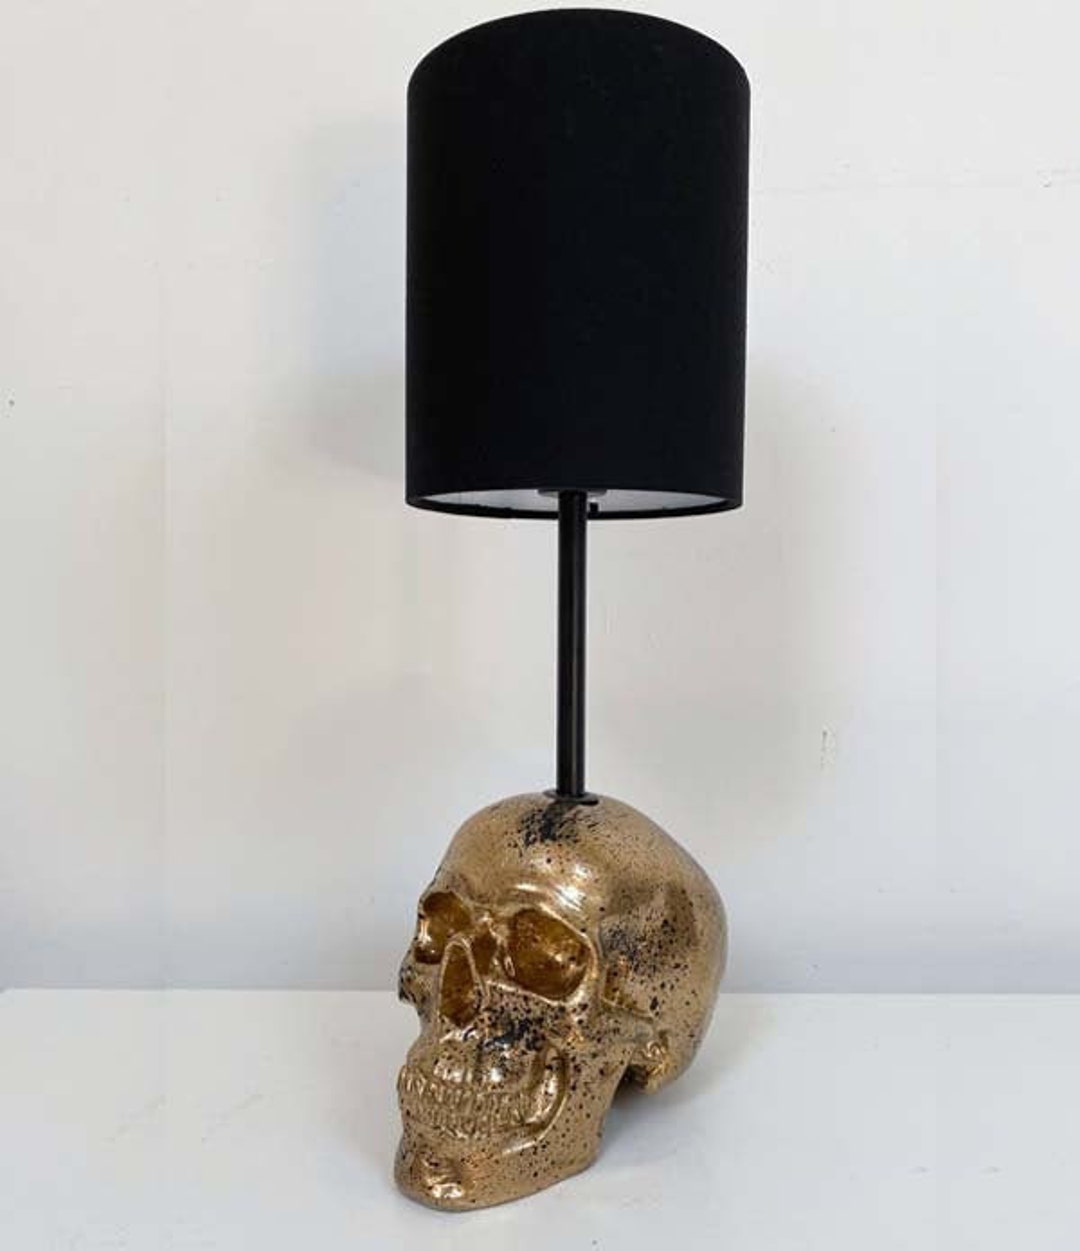 Liberty Colour Flip Skull Lampe // Totenkopf Deko // Skull Lamp //  Handgemacht by Haus of Skulls -  Schweiz